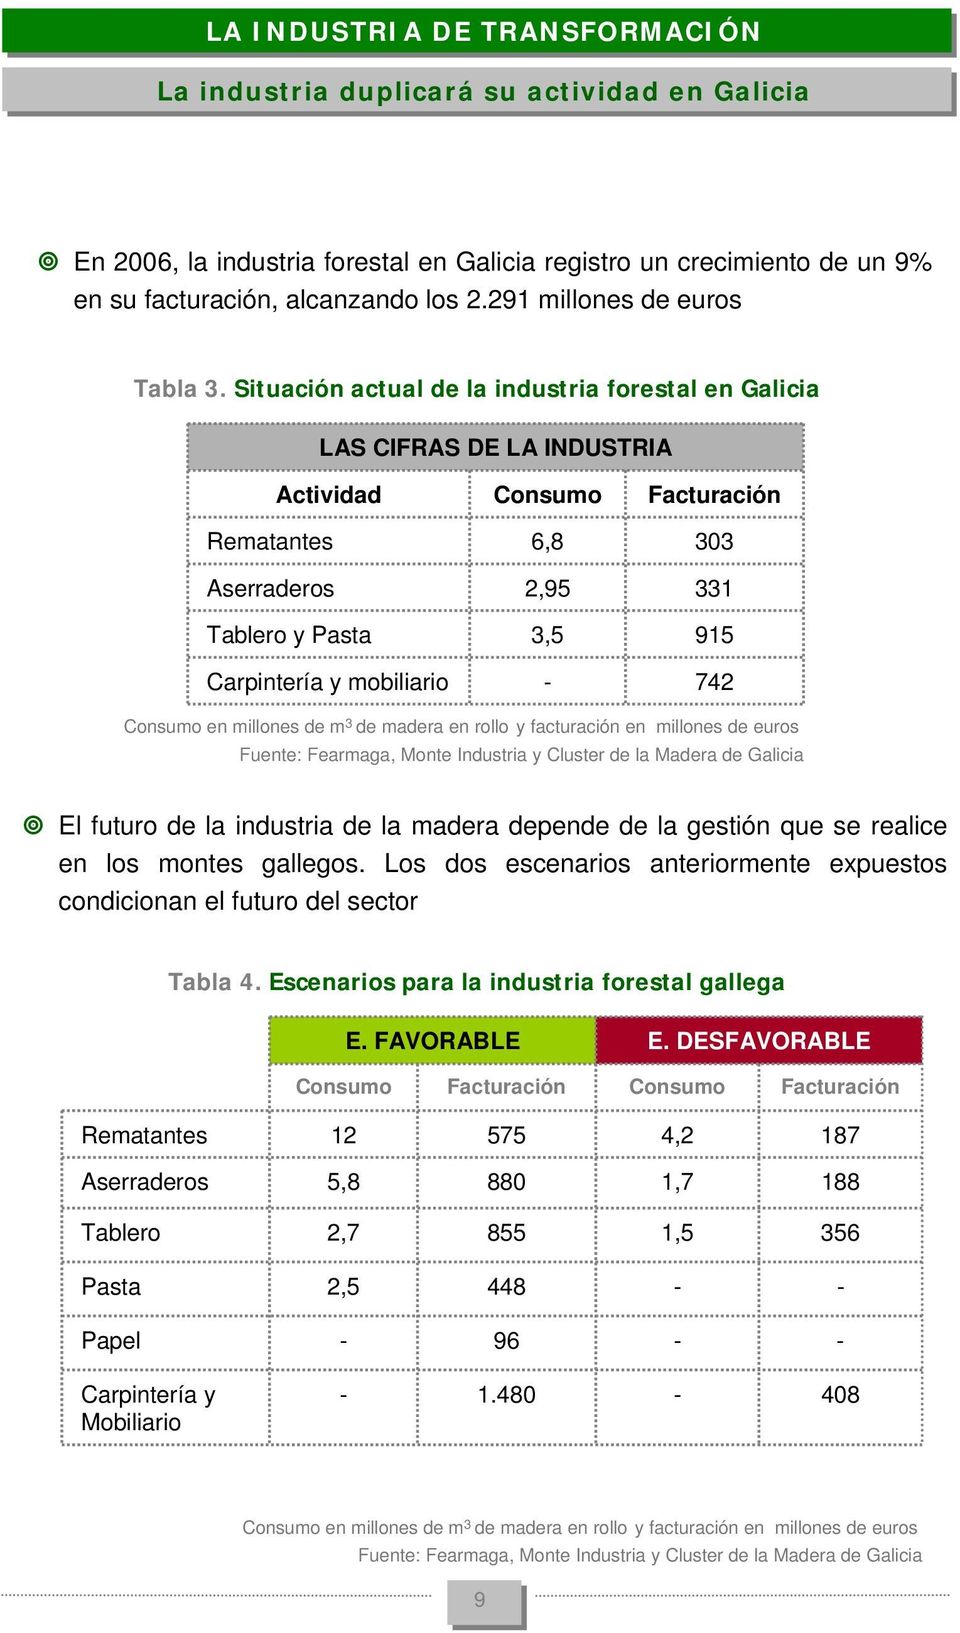 Situación actual de la industria forestal en Galicia LAS CIFRAS DE LA INDUSTRIA Actividad Consumo Facturación Rematantes 6,8 303 Aserraderos 2,95 331 Tablero y Pasta 3,5 915 Carpintería y mobiliario